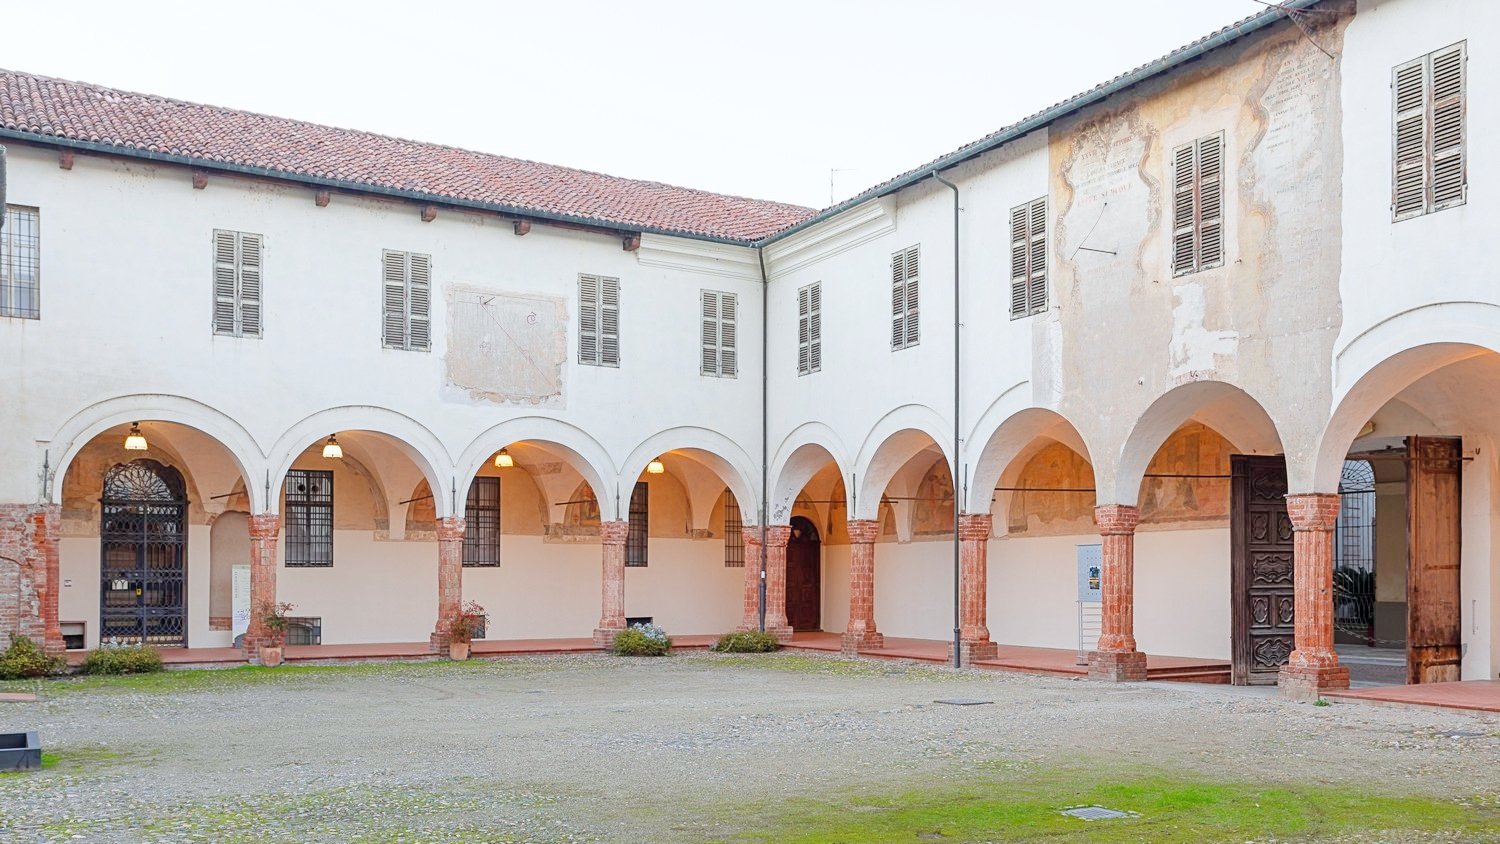 Sabato 11 e domenica 12 giugno doppio appuntamento con la cultura al Museo Civico e Gipsoteca Bistolfi di Casale Monferrato